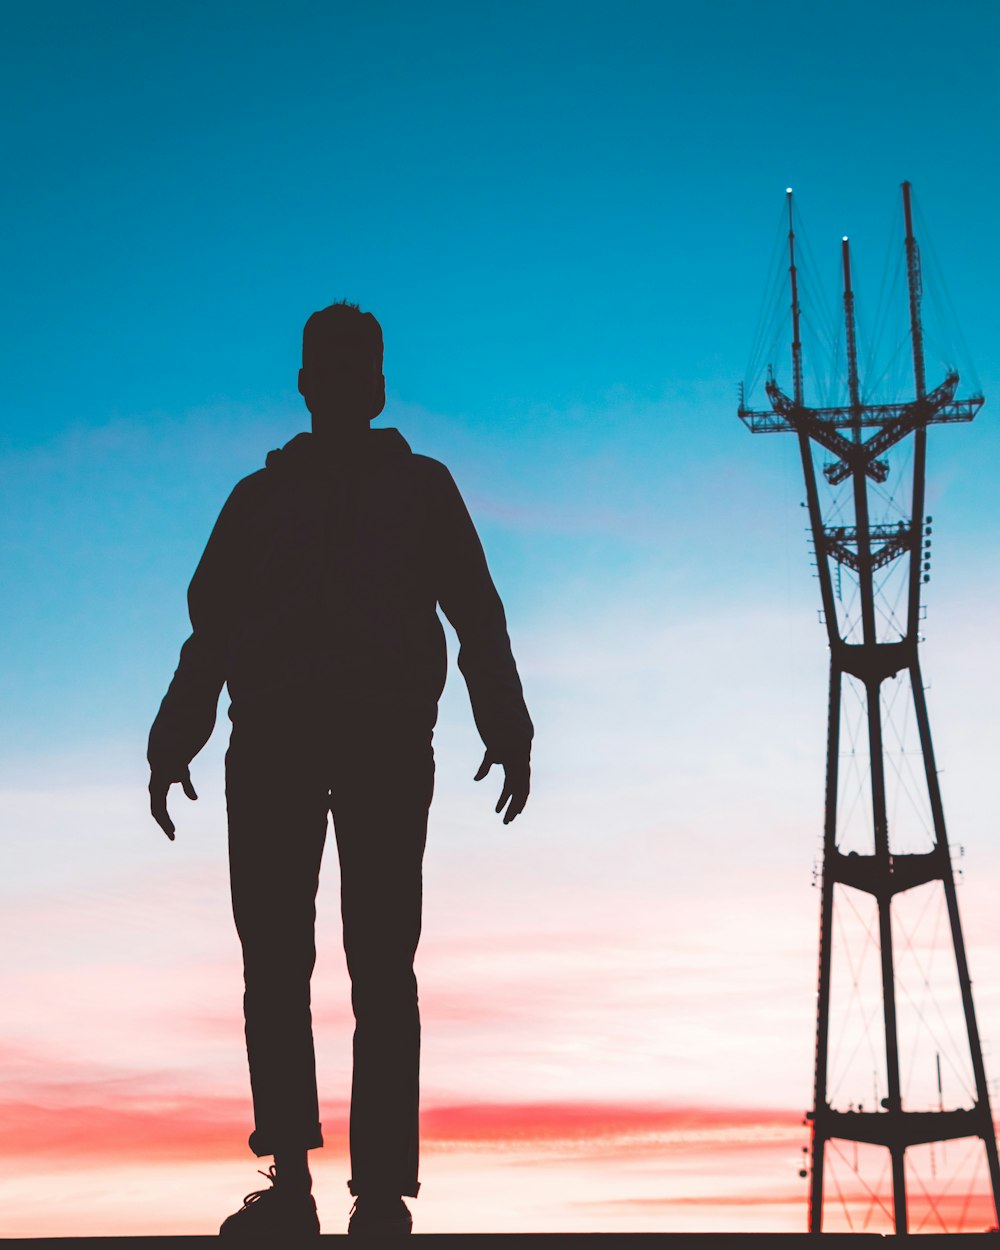 Fotografía de la silueta del hombre de pie frente a la torre de transmisión